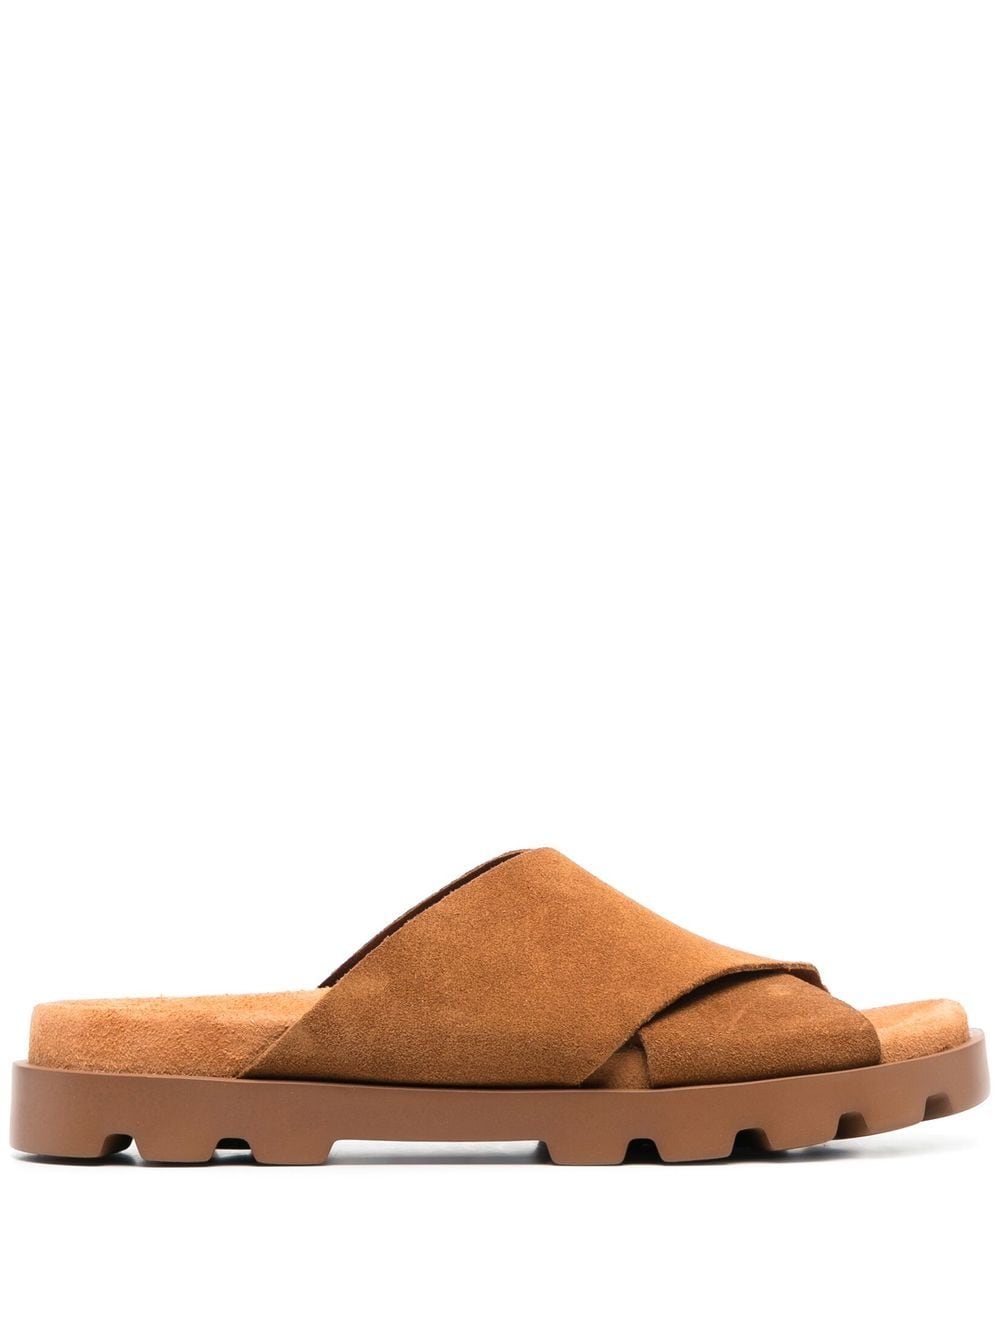 Image 1 of Camper Brutus cross-strap slide sandals